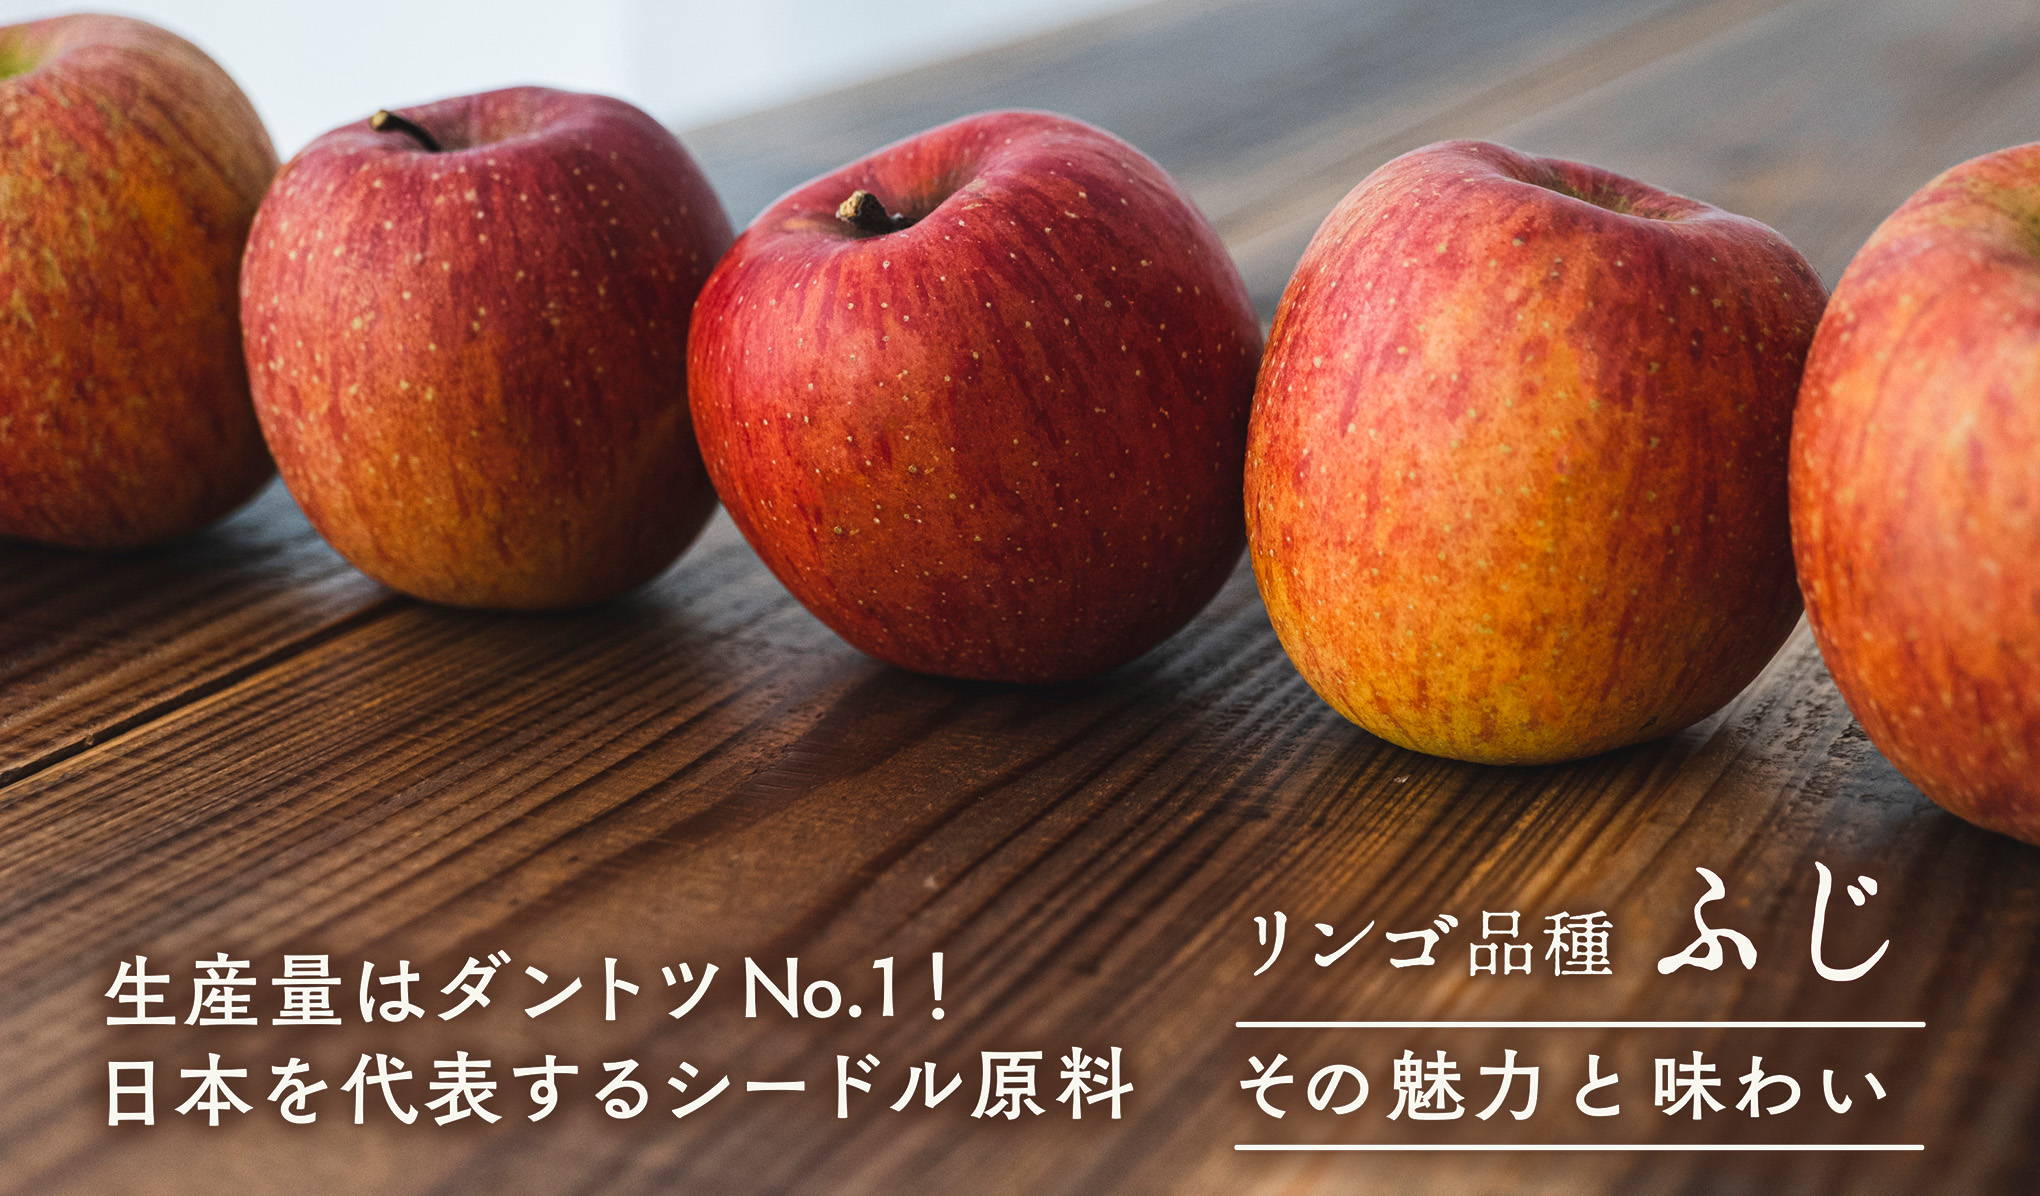 － その魅力と味わい － 生産量はダントツNo.1！日本を代表するシードル原料、リンゴ品種ふじ